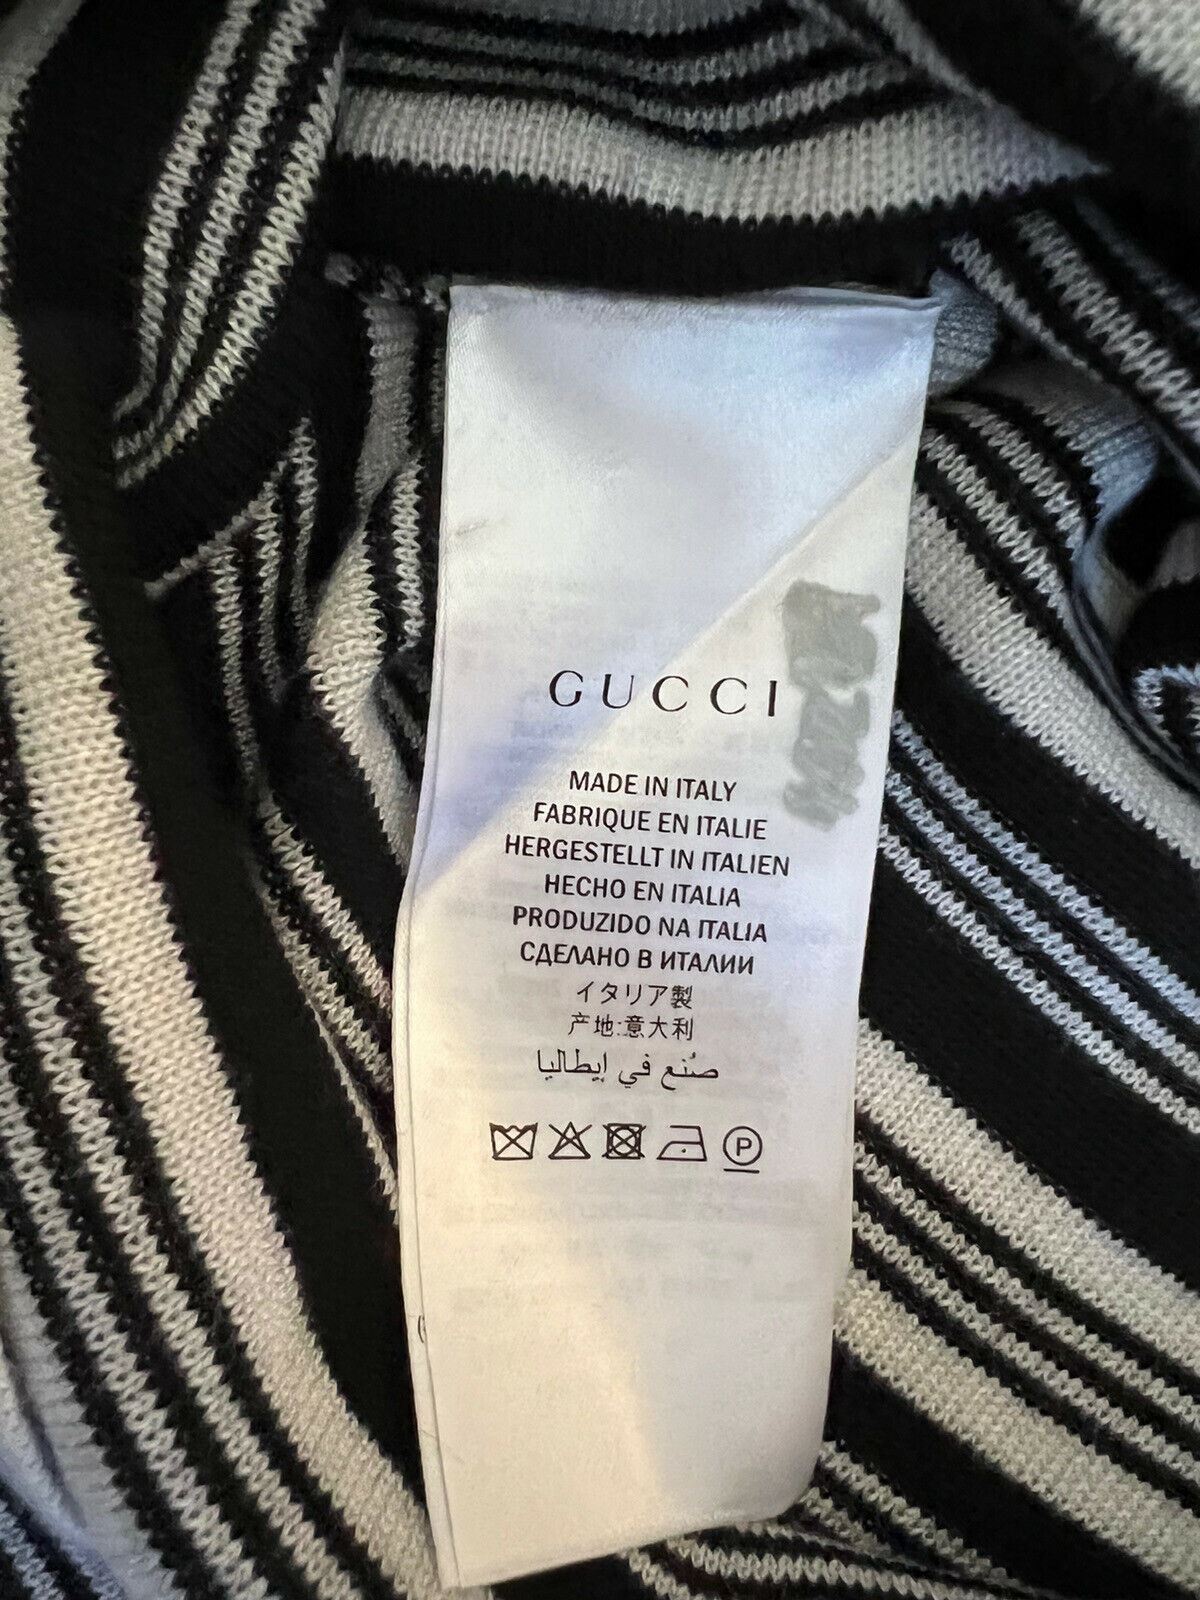 Женский свитер Gucci Blind for Love, черный кашемир/шелк, средний вес, NWT 1280 долларов США, Италия